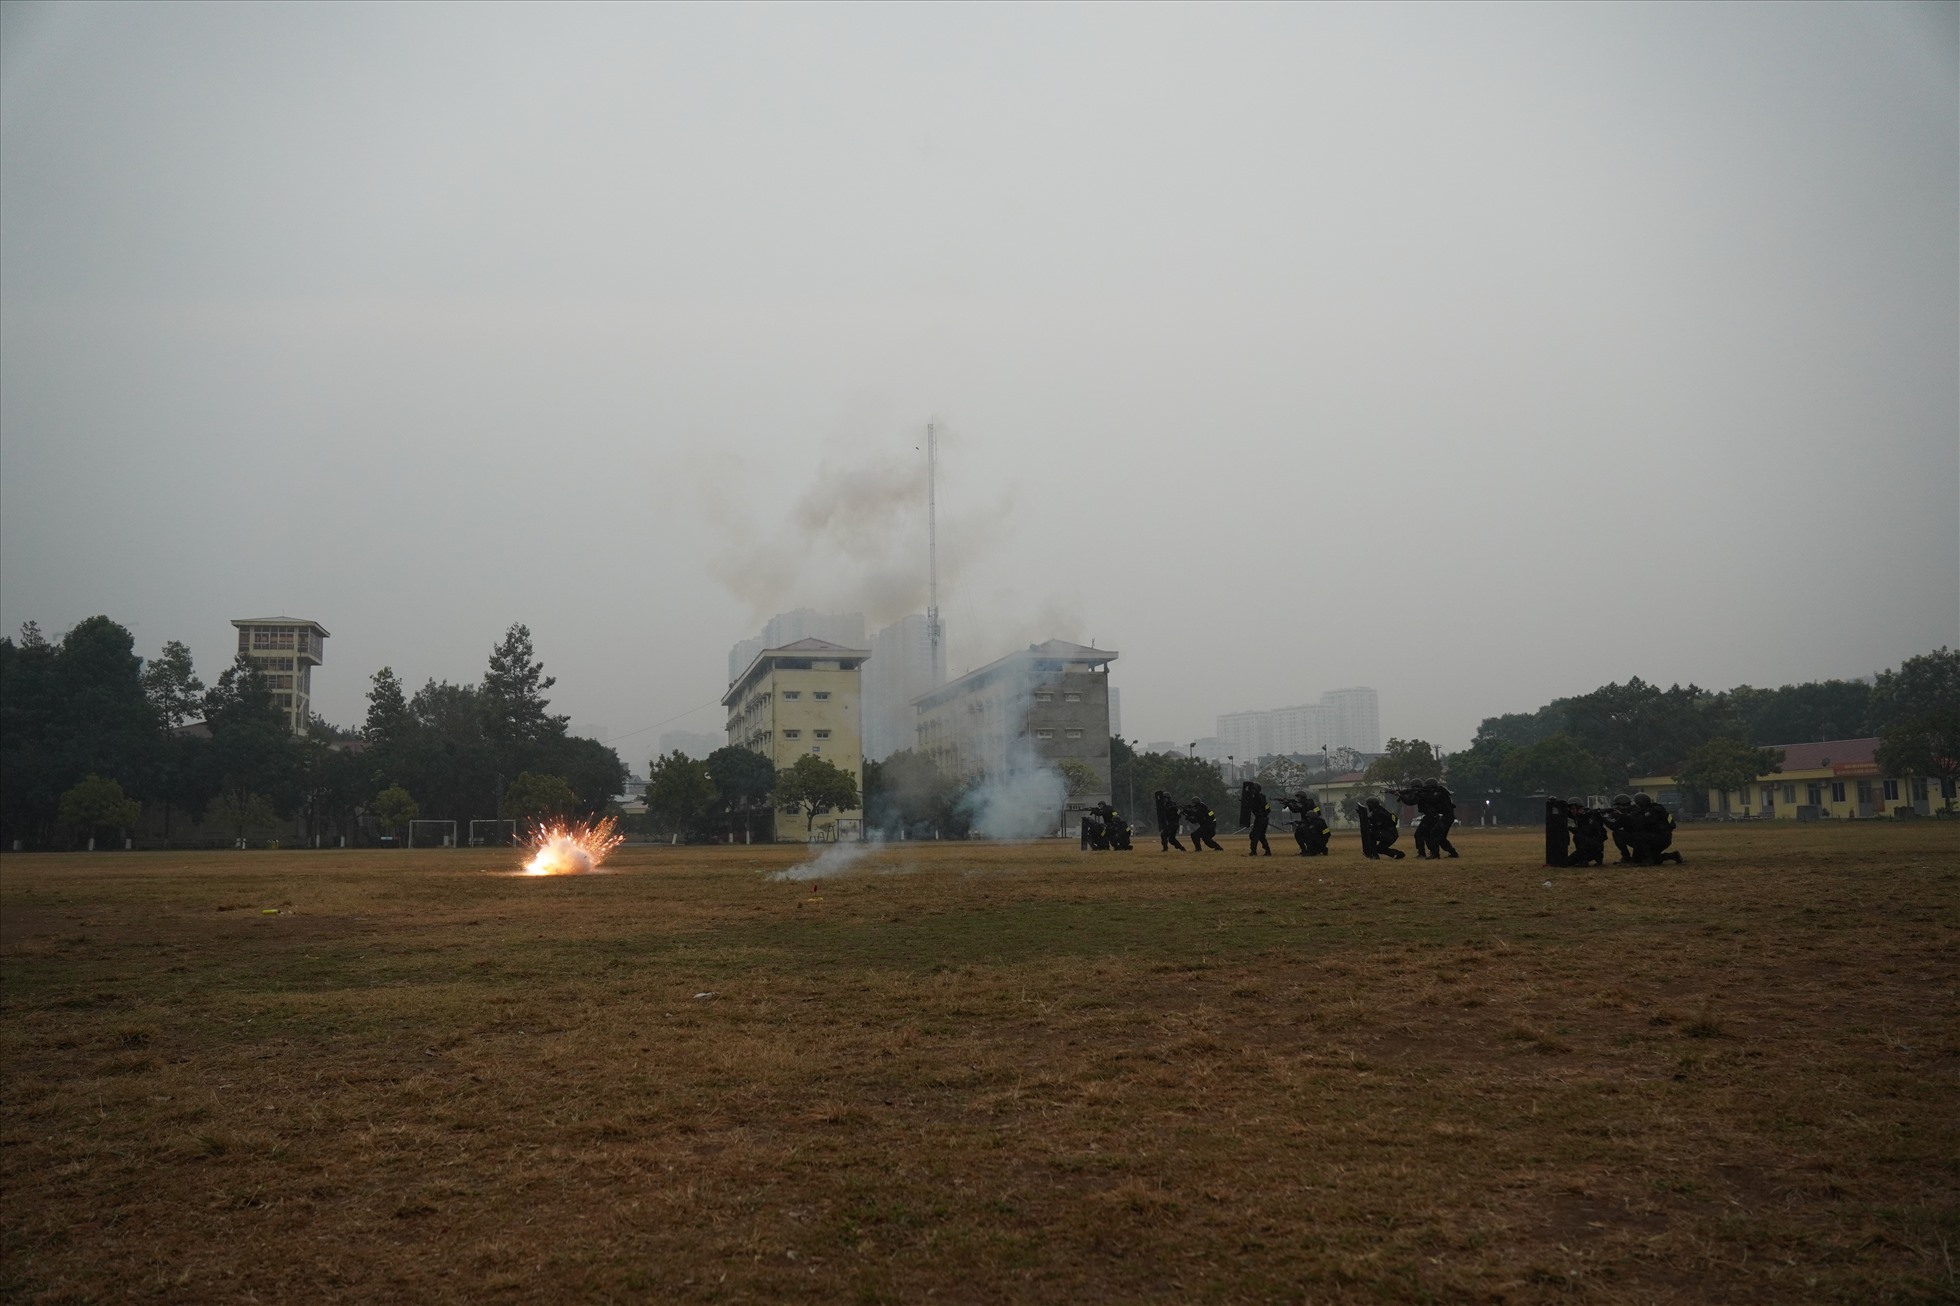 Thời tiết tại Hà Nội mưa rét nhưng các chiến sỹ vẫn hăng say luyện tập.